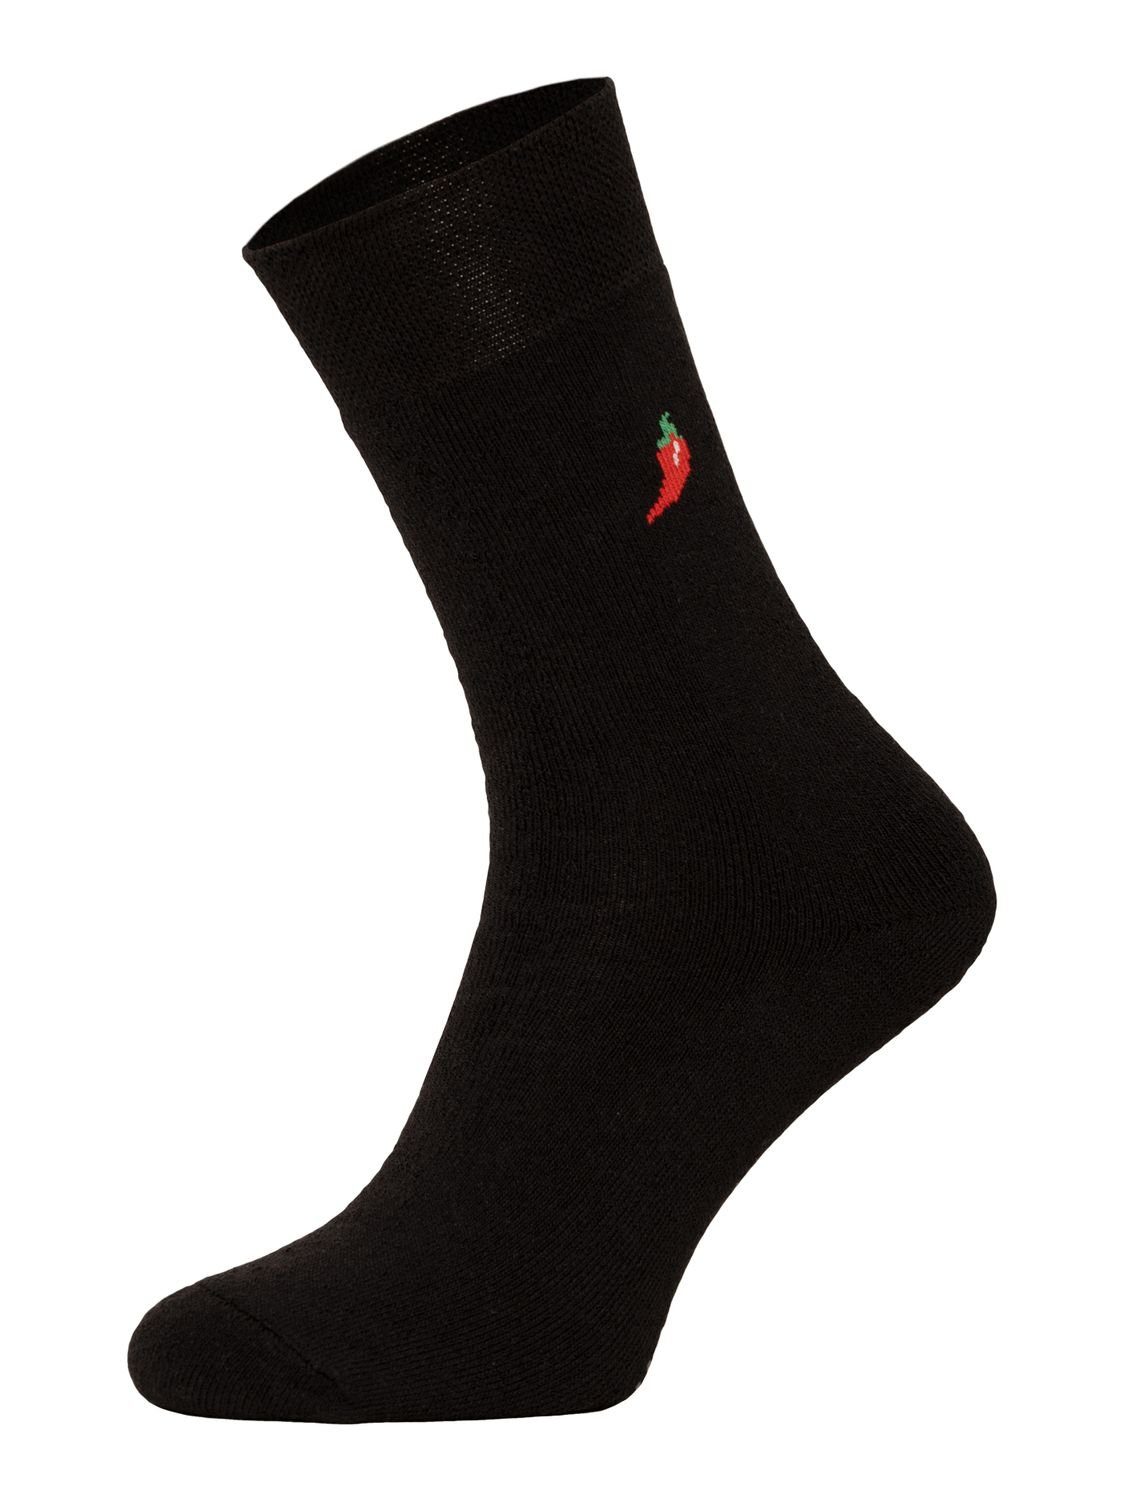 Chili Lifestyle Socken, Chili Ski 9 Thermo Paar, für und Damen, Strümpfe Wintersocken, Herren